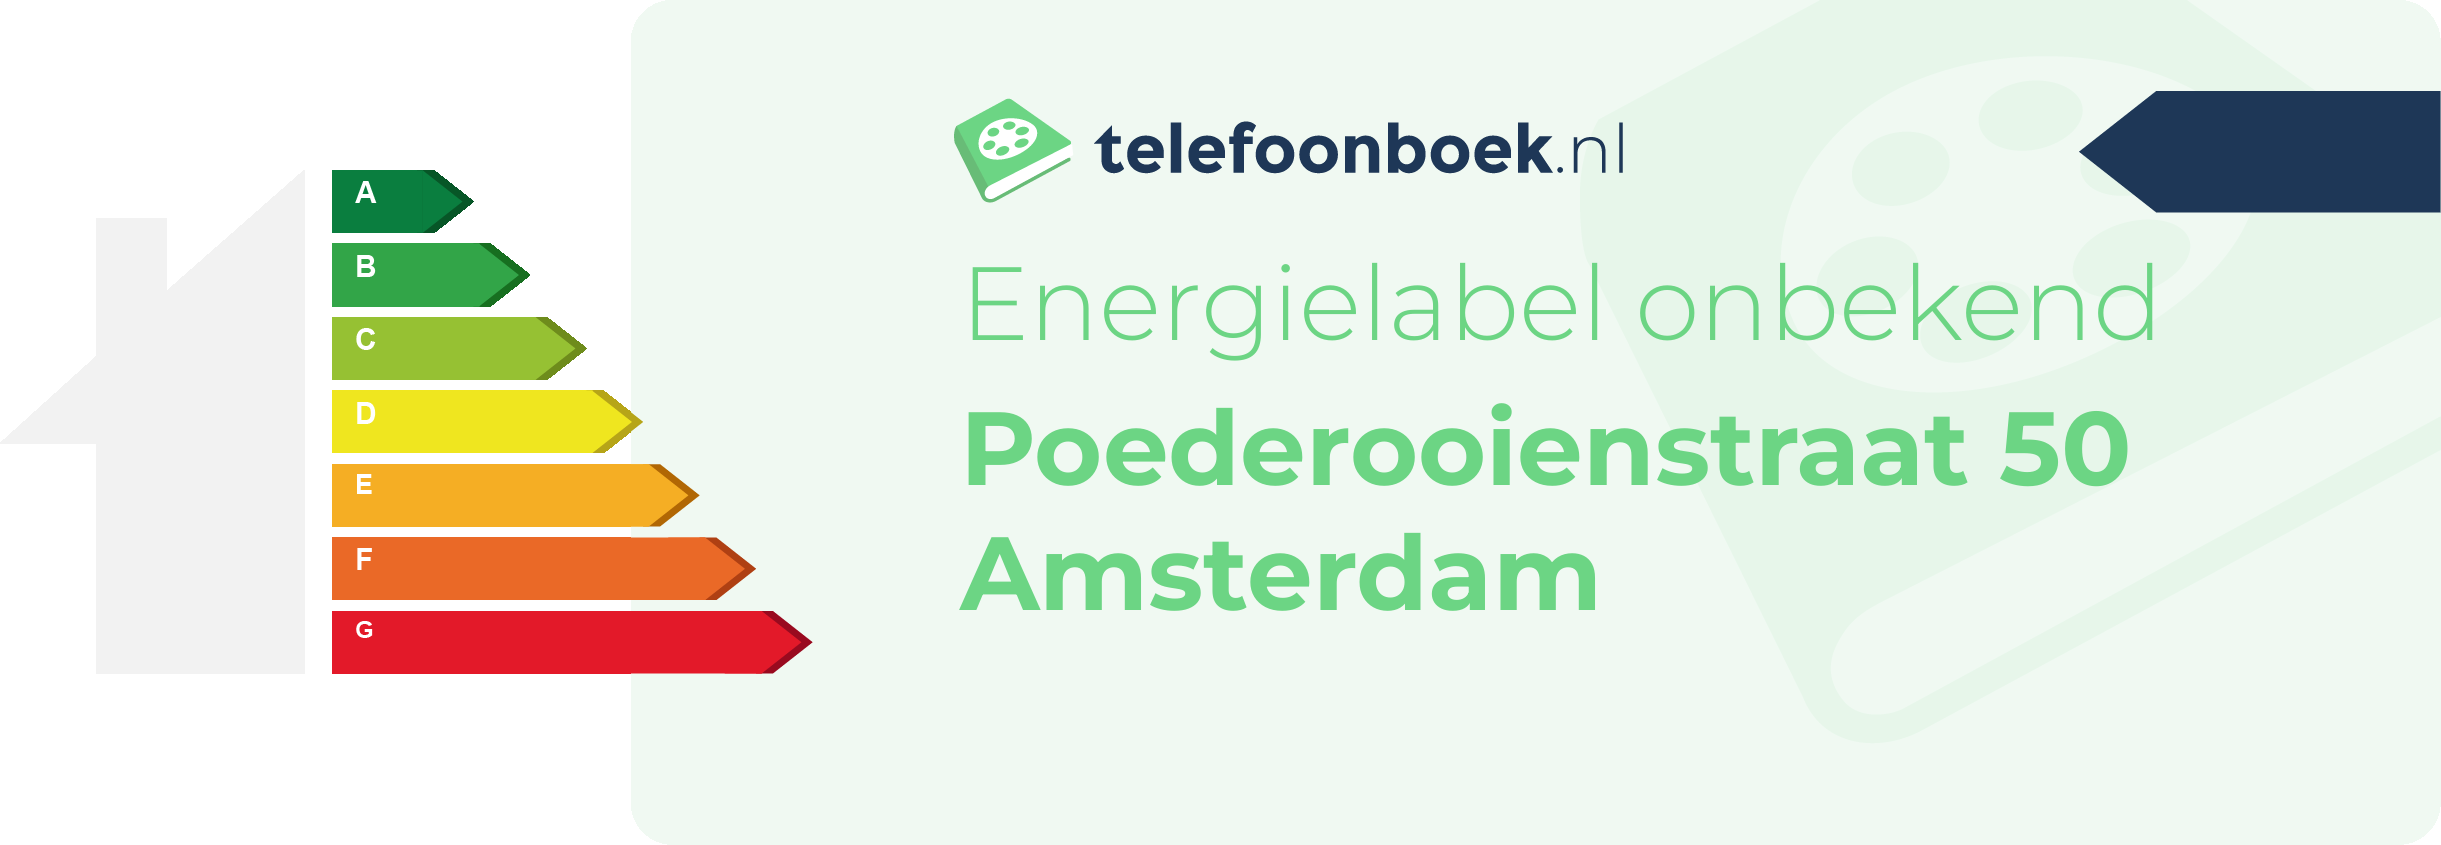 Energielabel Poederooienstraat 50 Amsterdam